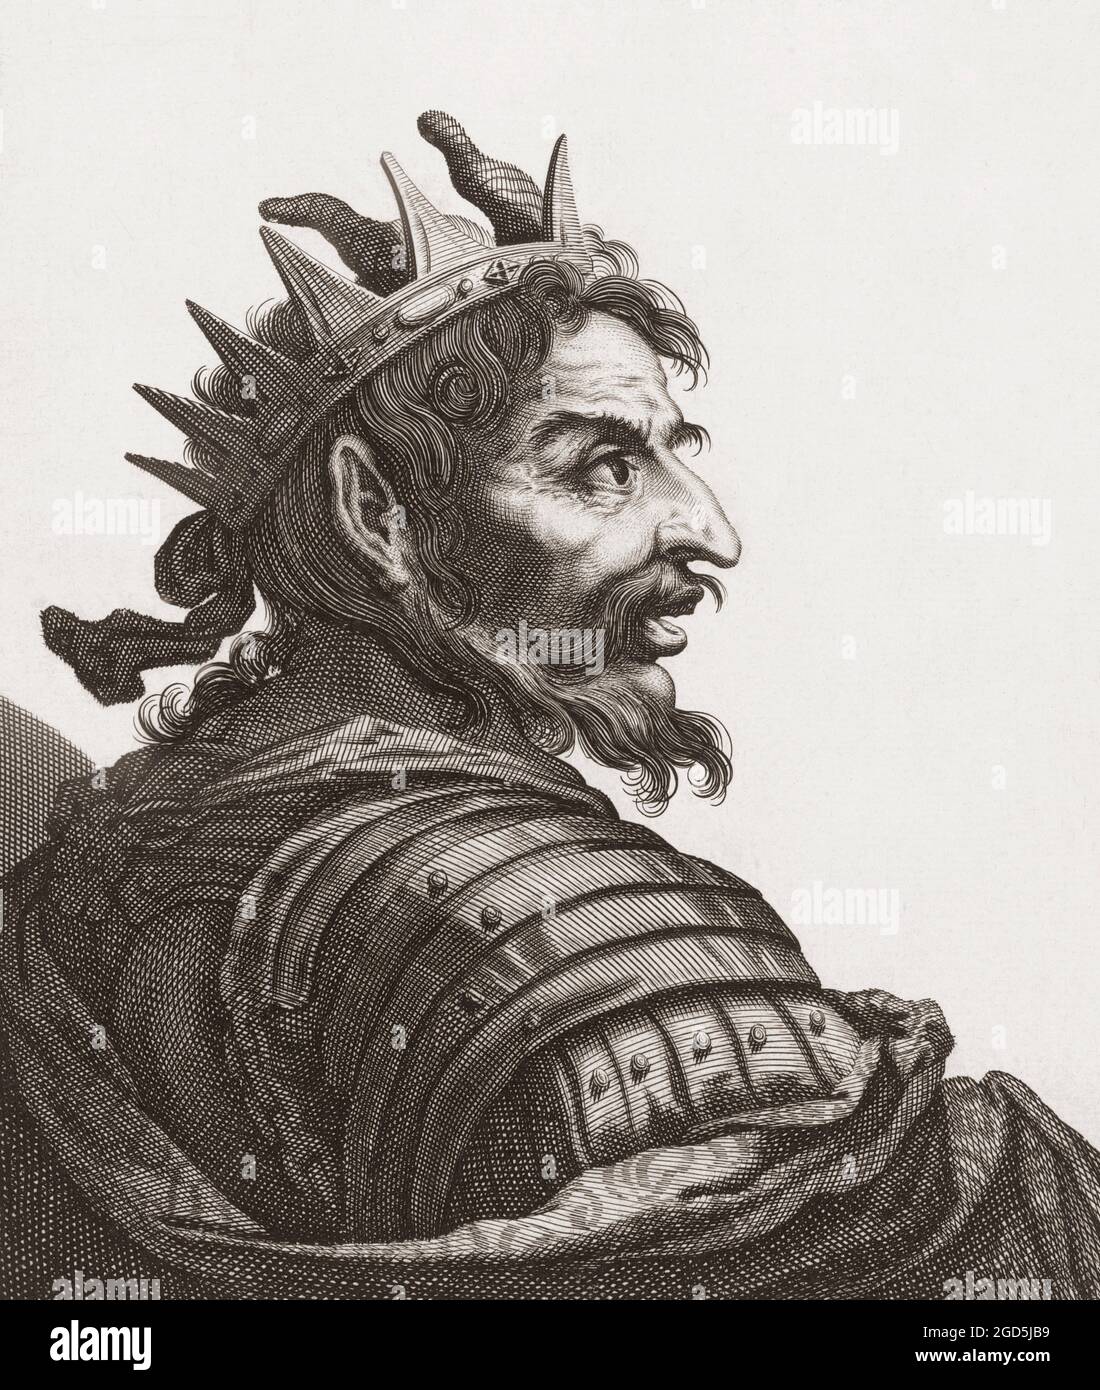 Attila the Hun, c. 406 - c. 453. Anführer der Hunnen, der schließlich ein Stammesreich führte, das Ostgoten und Alanen umfasste. Aus einem Druck von Jerome David aus dem 17. Jahrhundert. Stockfoto